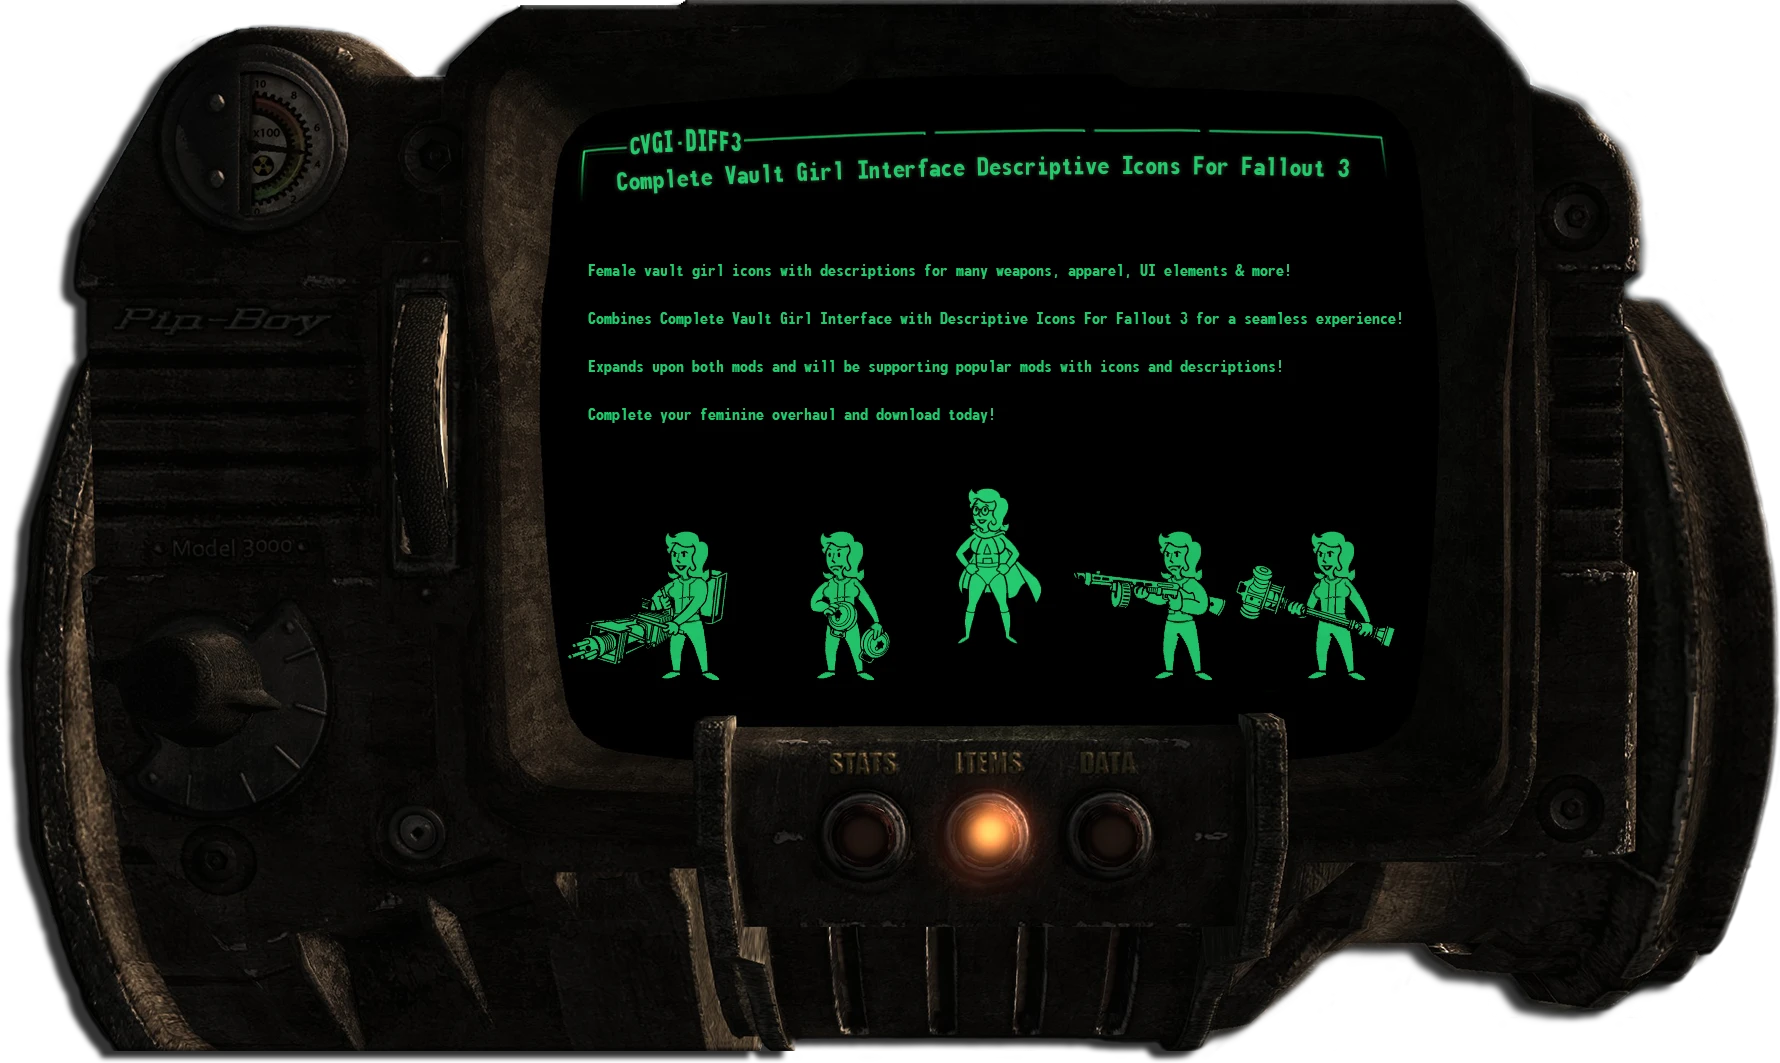 интерфейс fallout 3 как в fallout 4 фото 23